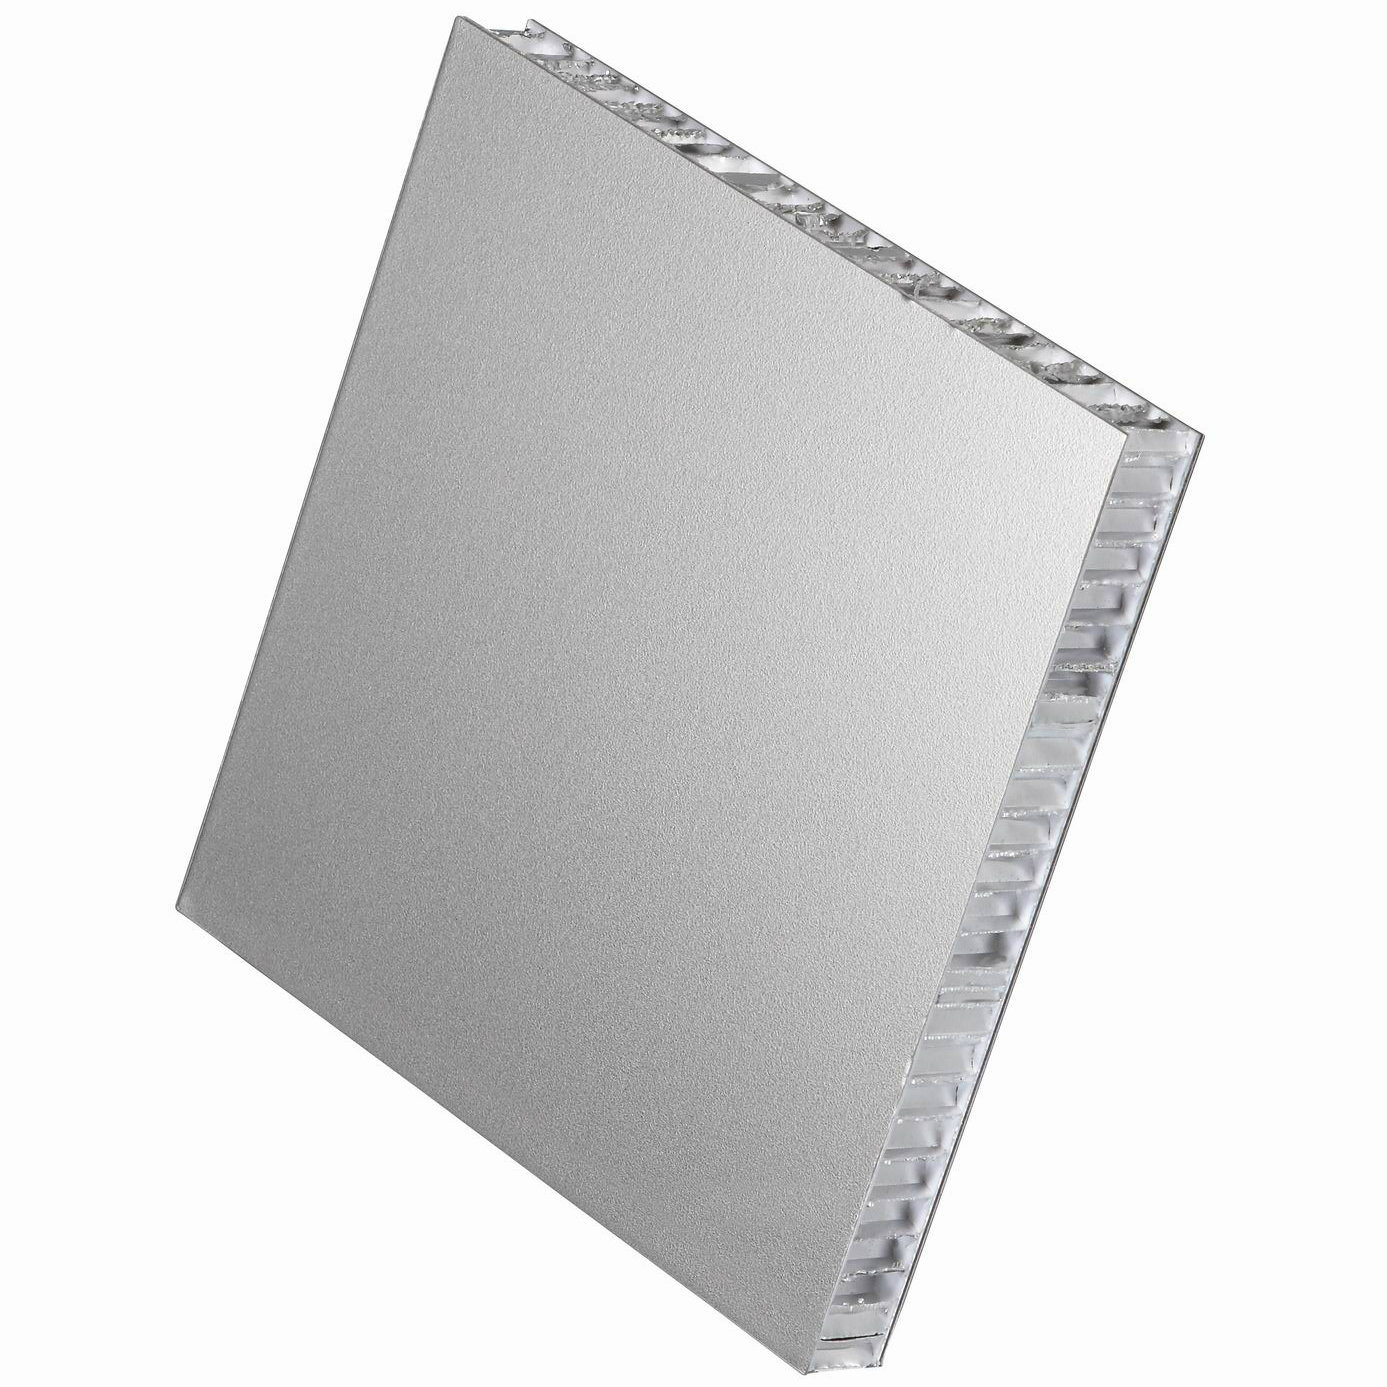 Aluminum-Honeycomb-Panels-as-Wall-Panels_jzfhscuh.jpg